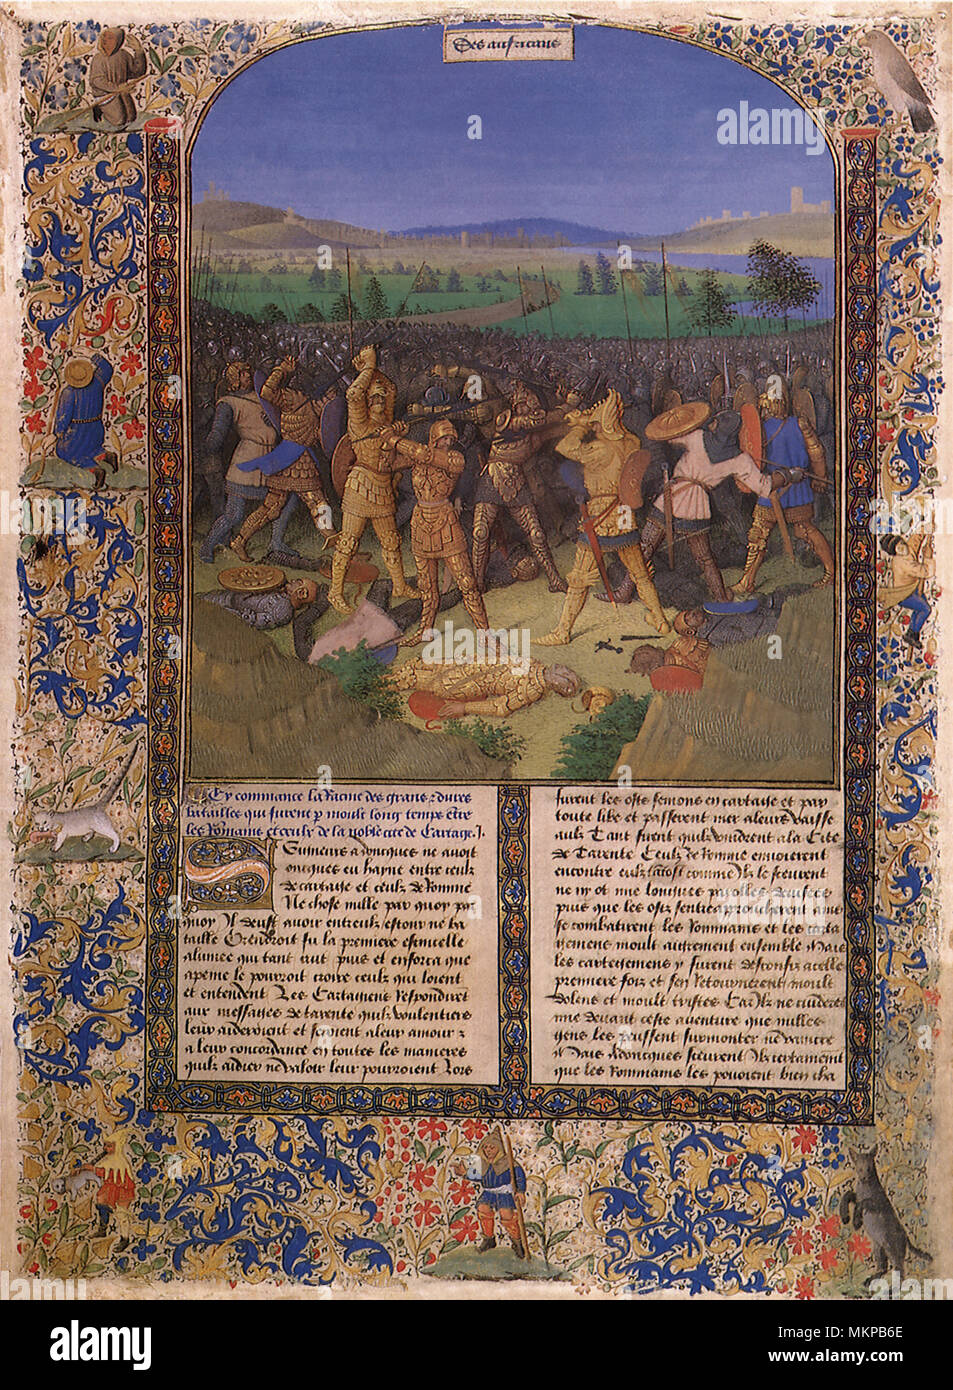 La batalla de los romanos y cartagineses 1475 Foto de stock